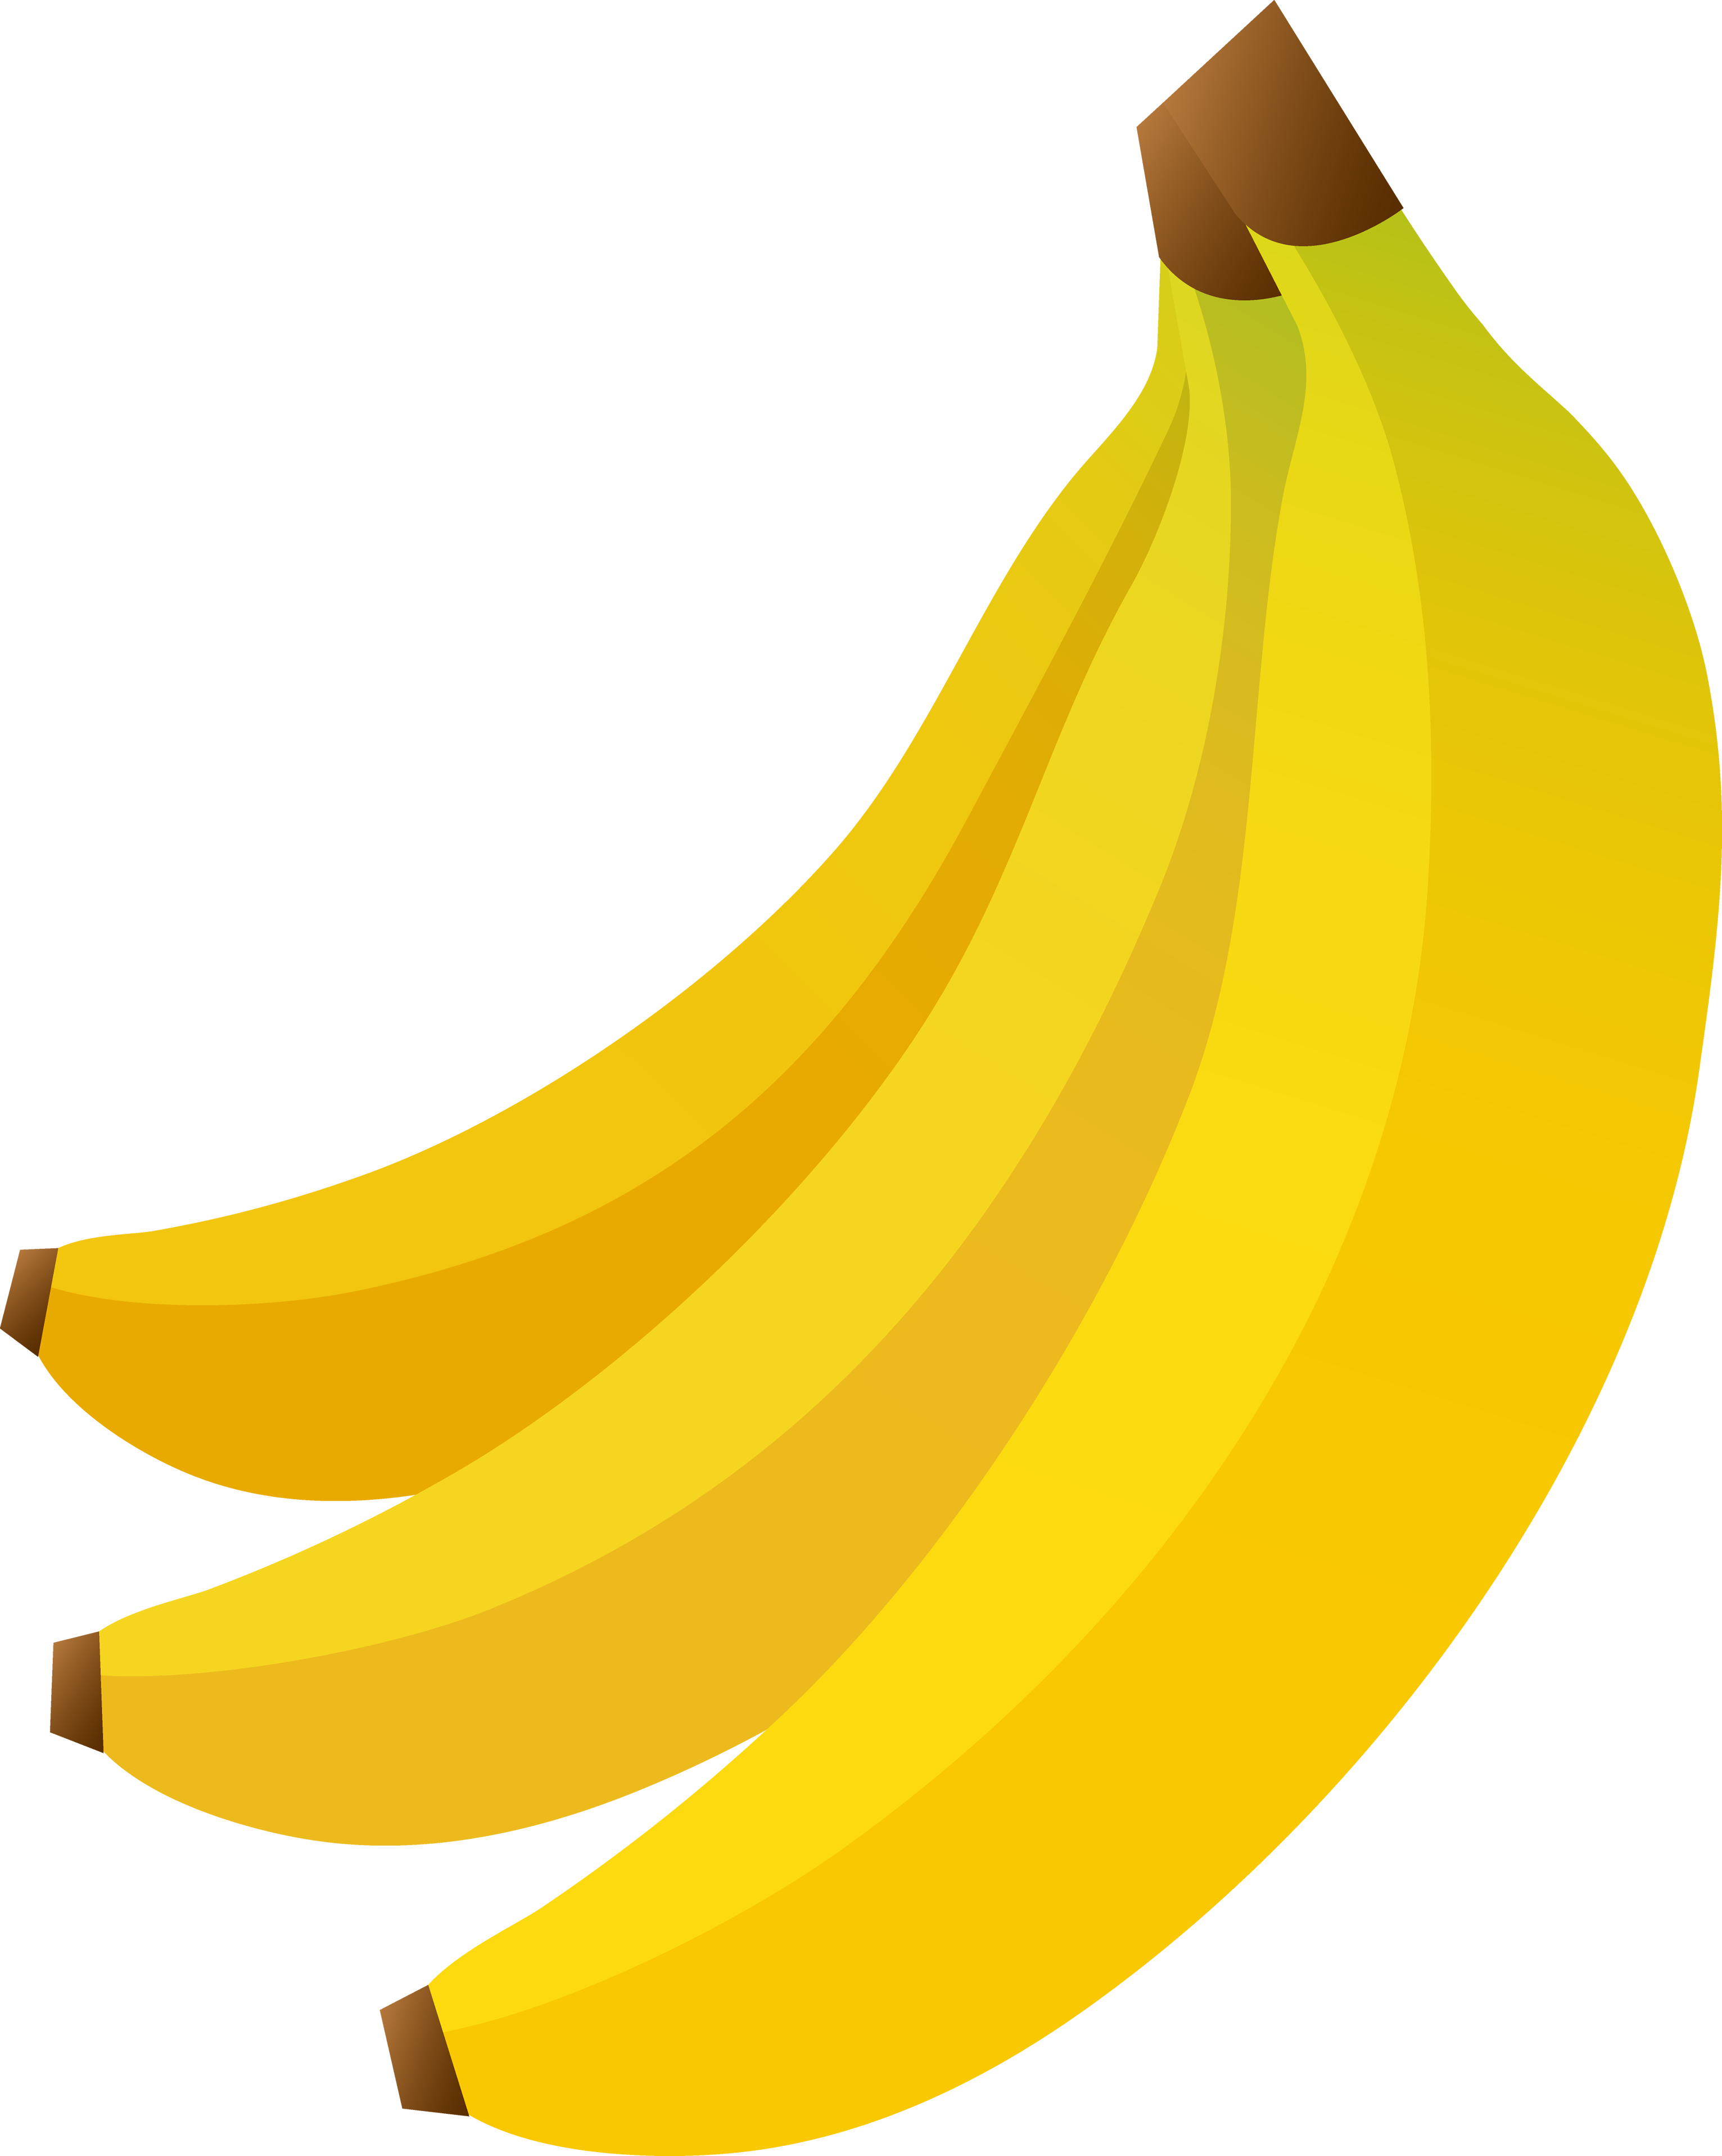 Banana PNG images Download 